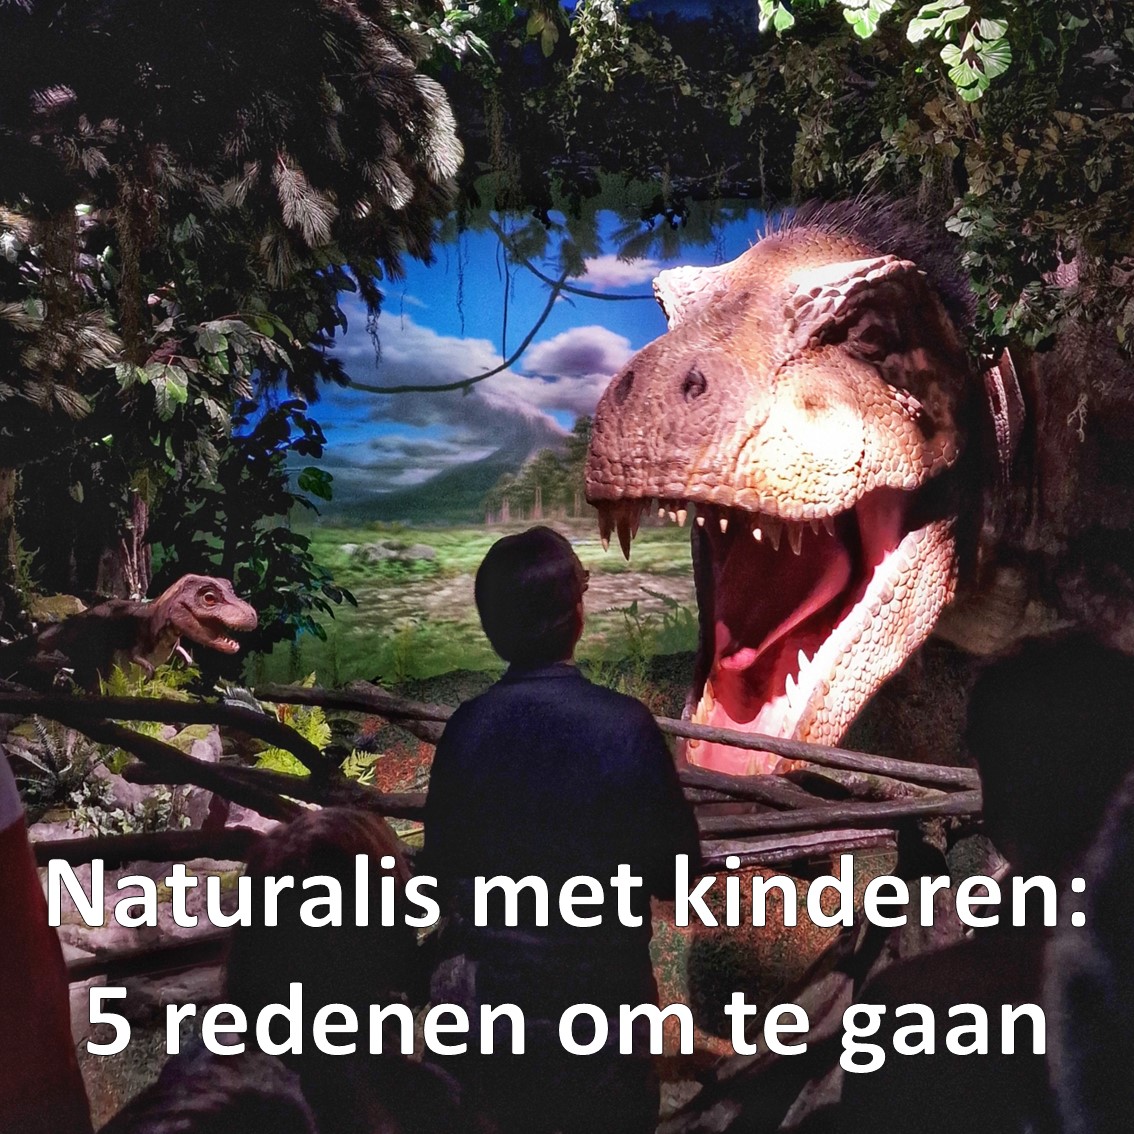 Museum Naturalis met kinderen: 5 redenen om te gaan